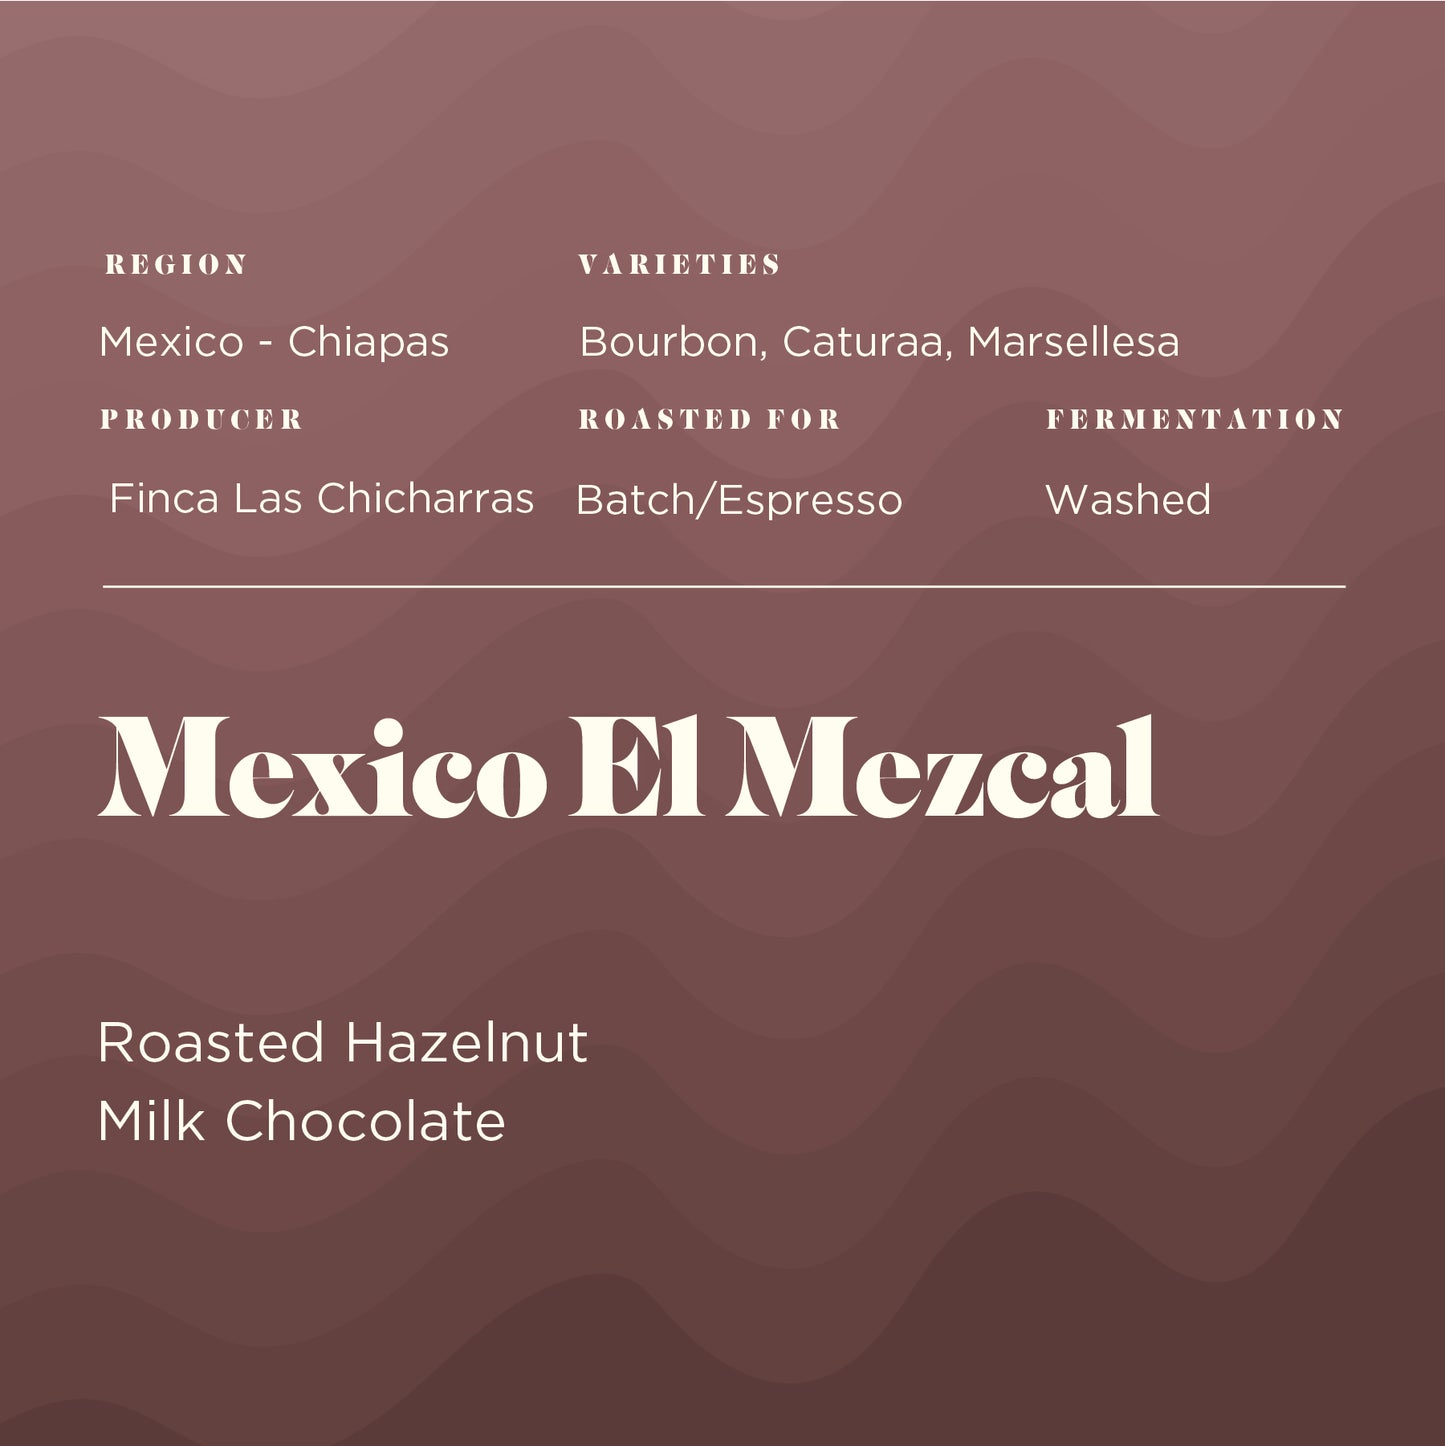 Mexico El Mezcal